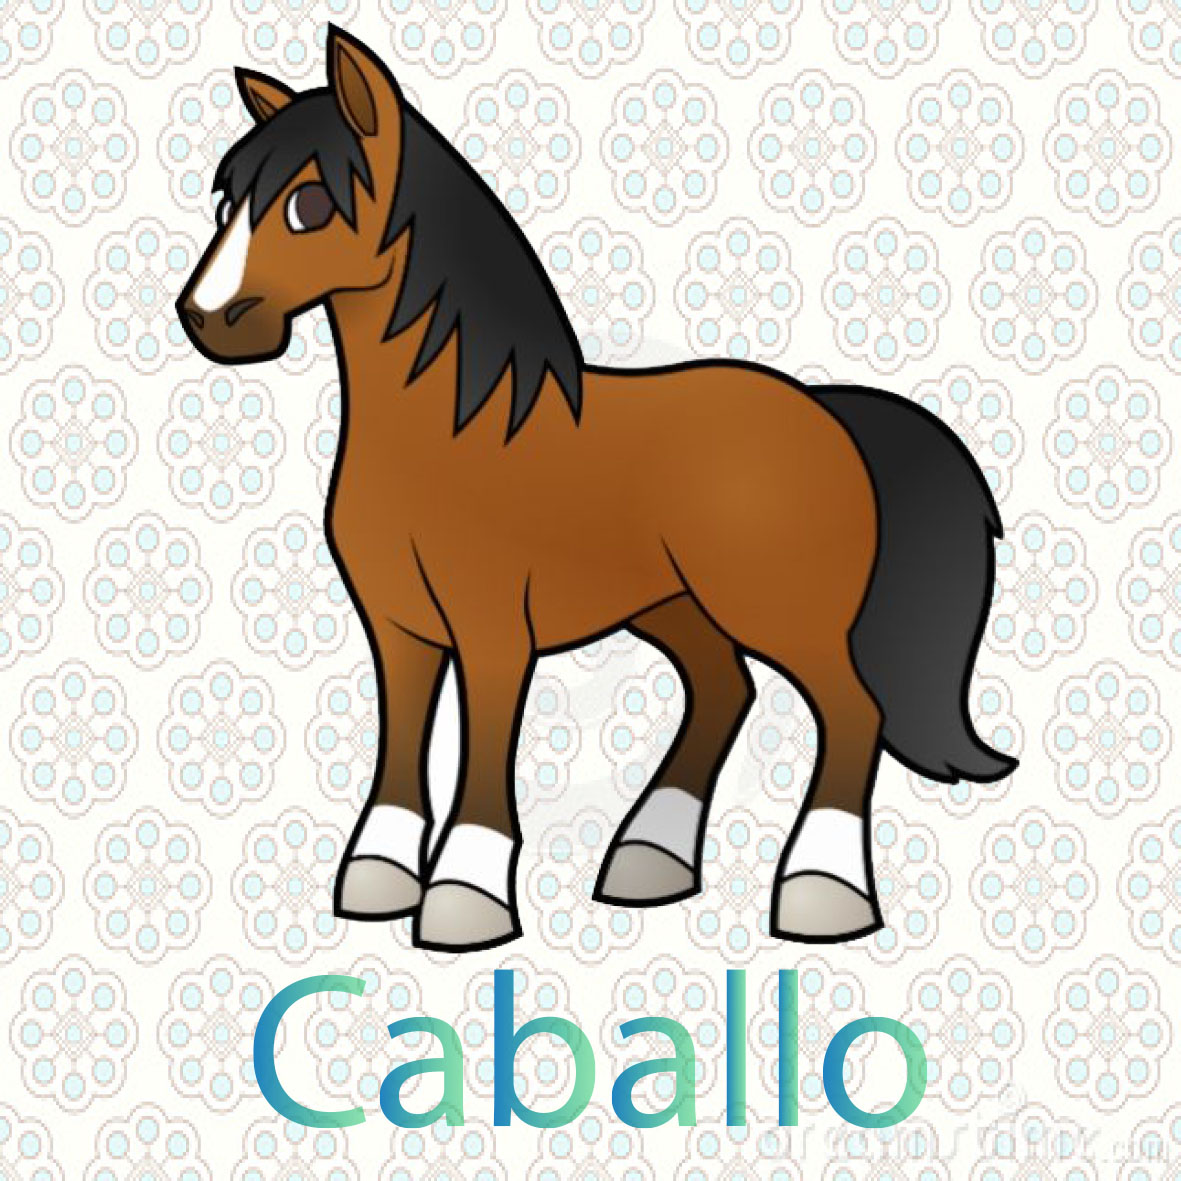  imagen de un caballo, animal mamifero que tiene cuatro patas, come hierva, viven en las granjas o el campo 